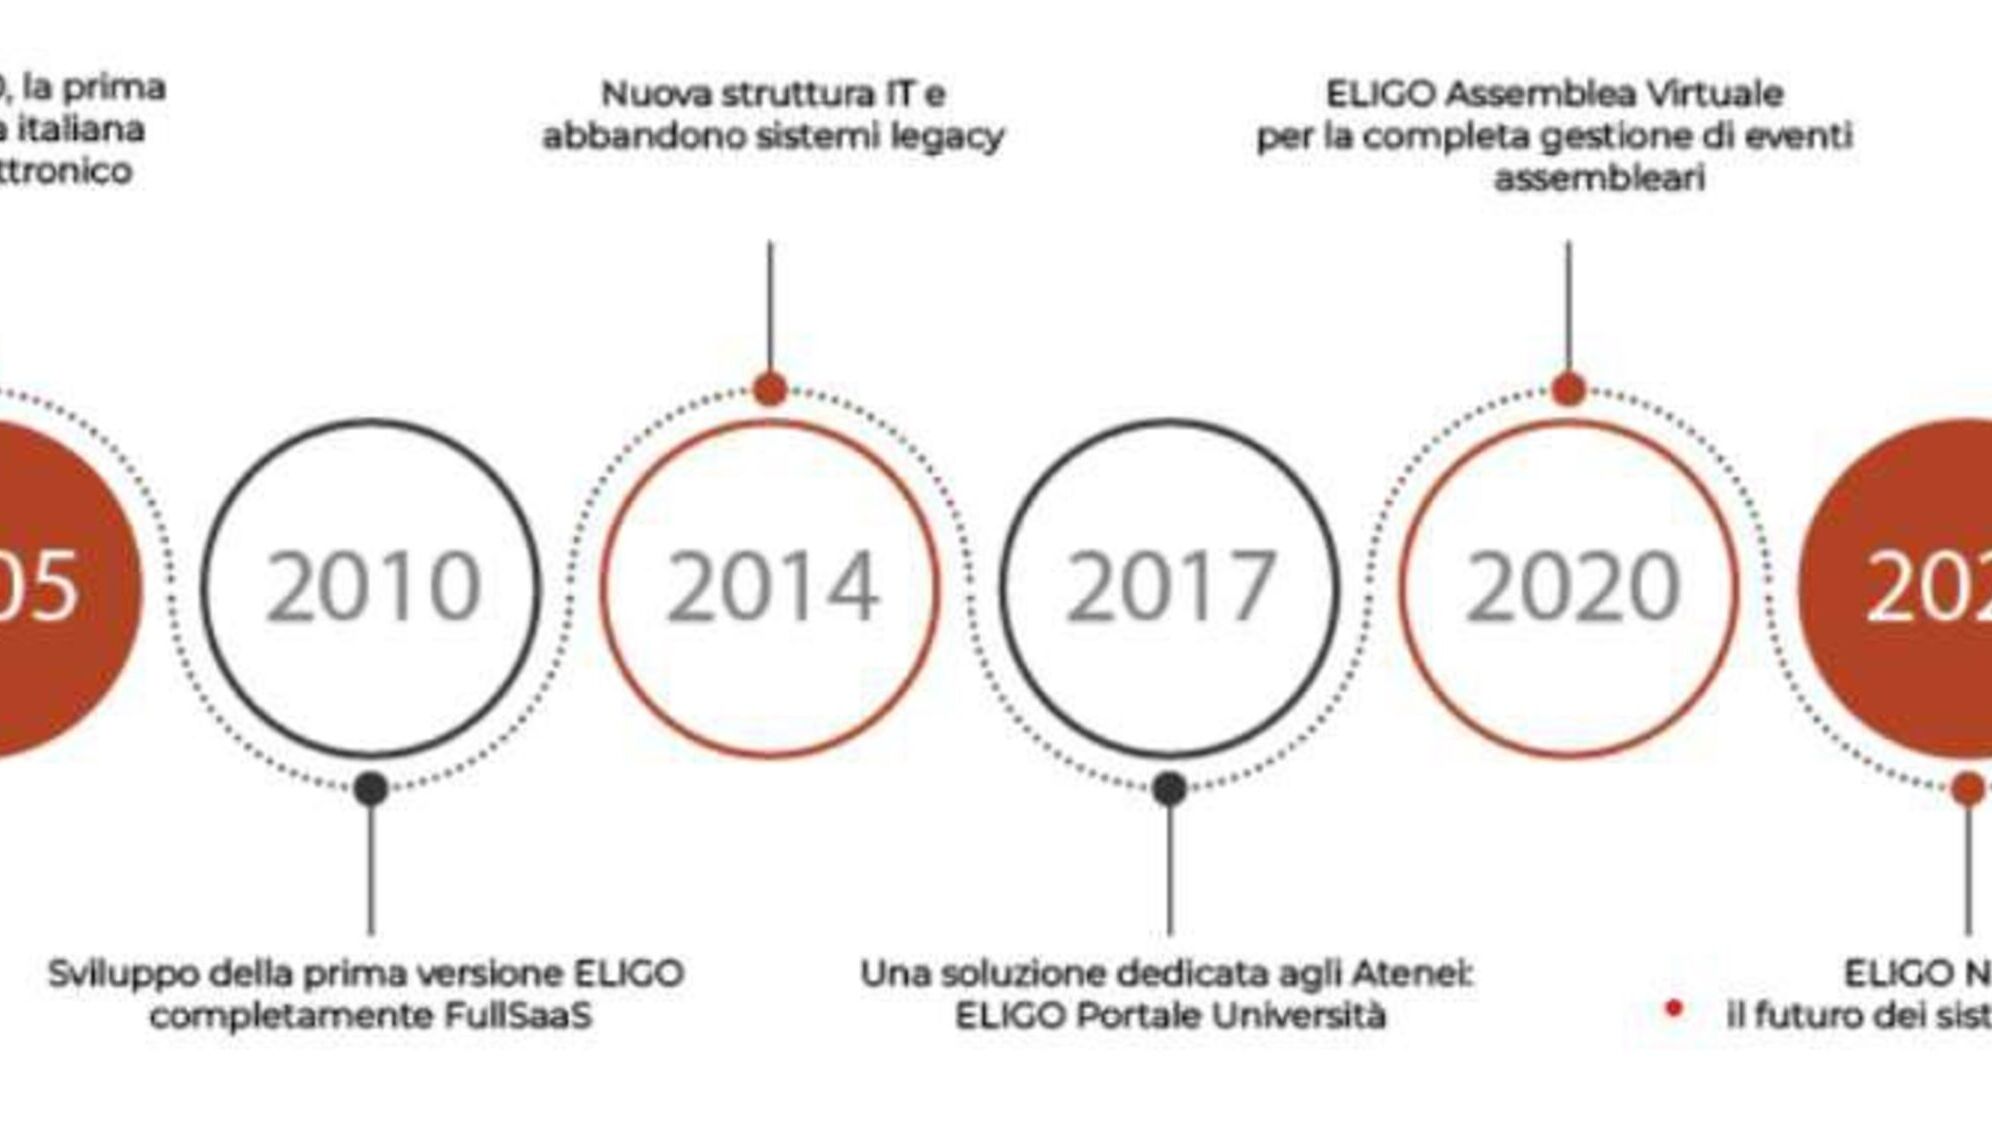 Eligo Next: zanimiva infografika povzeta po uradni predstavitveni brošuri nove elektronske in spletne volilne platforme Eligo Next